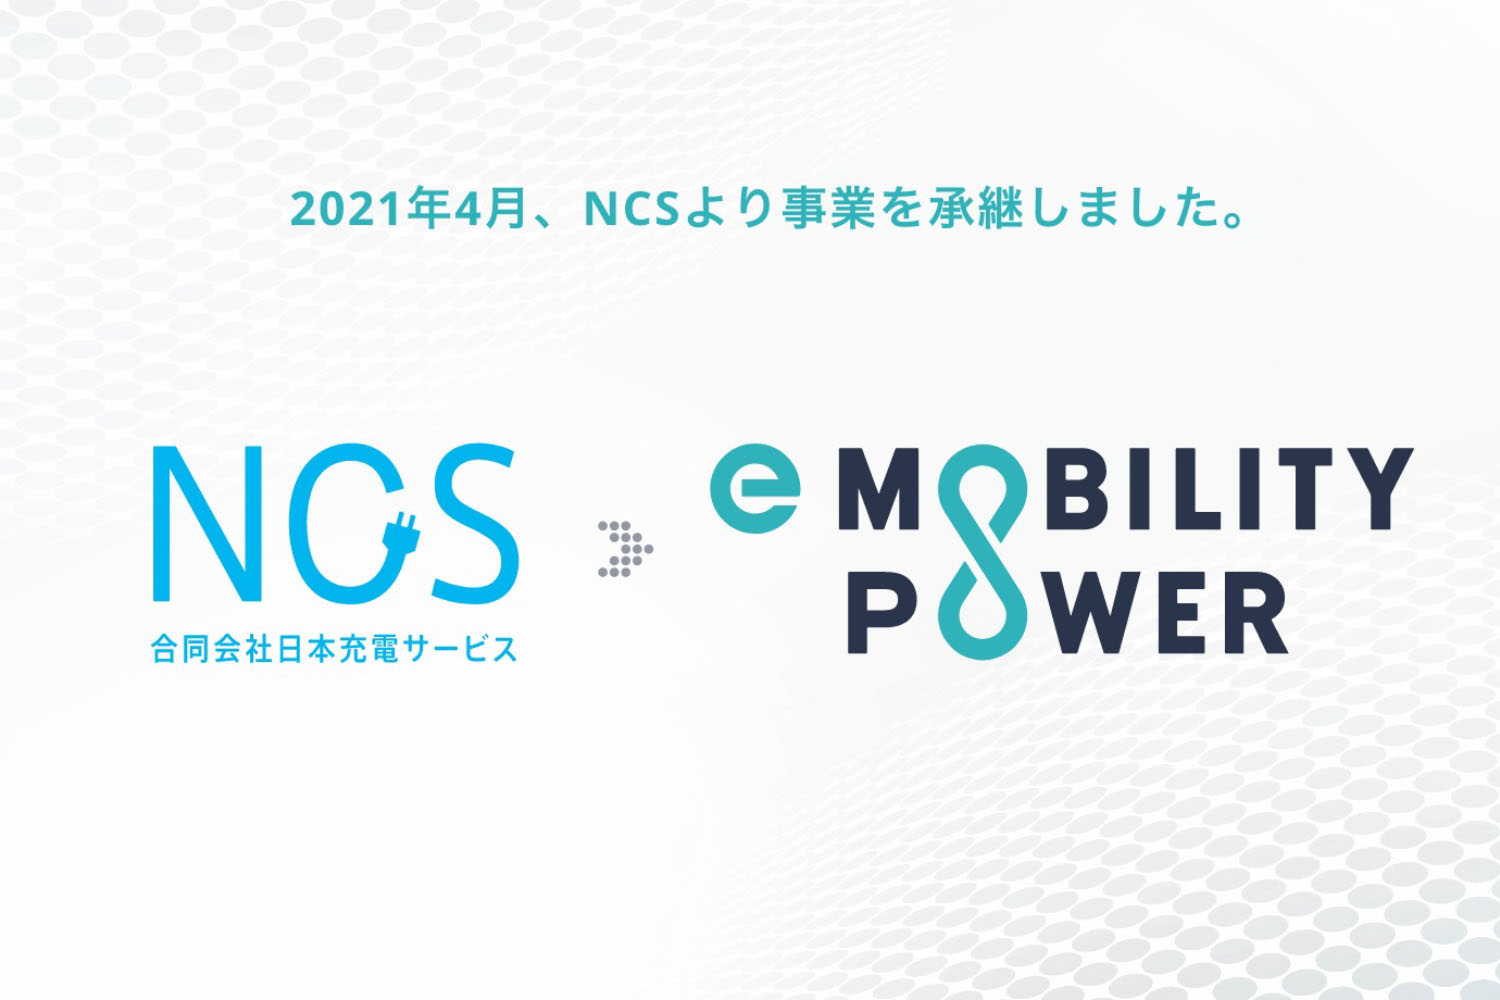 日本充電サービスからイーモビリティパワーへの事業継承